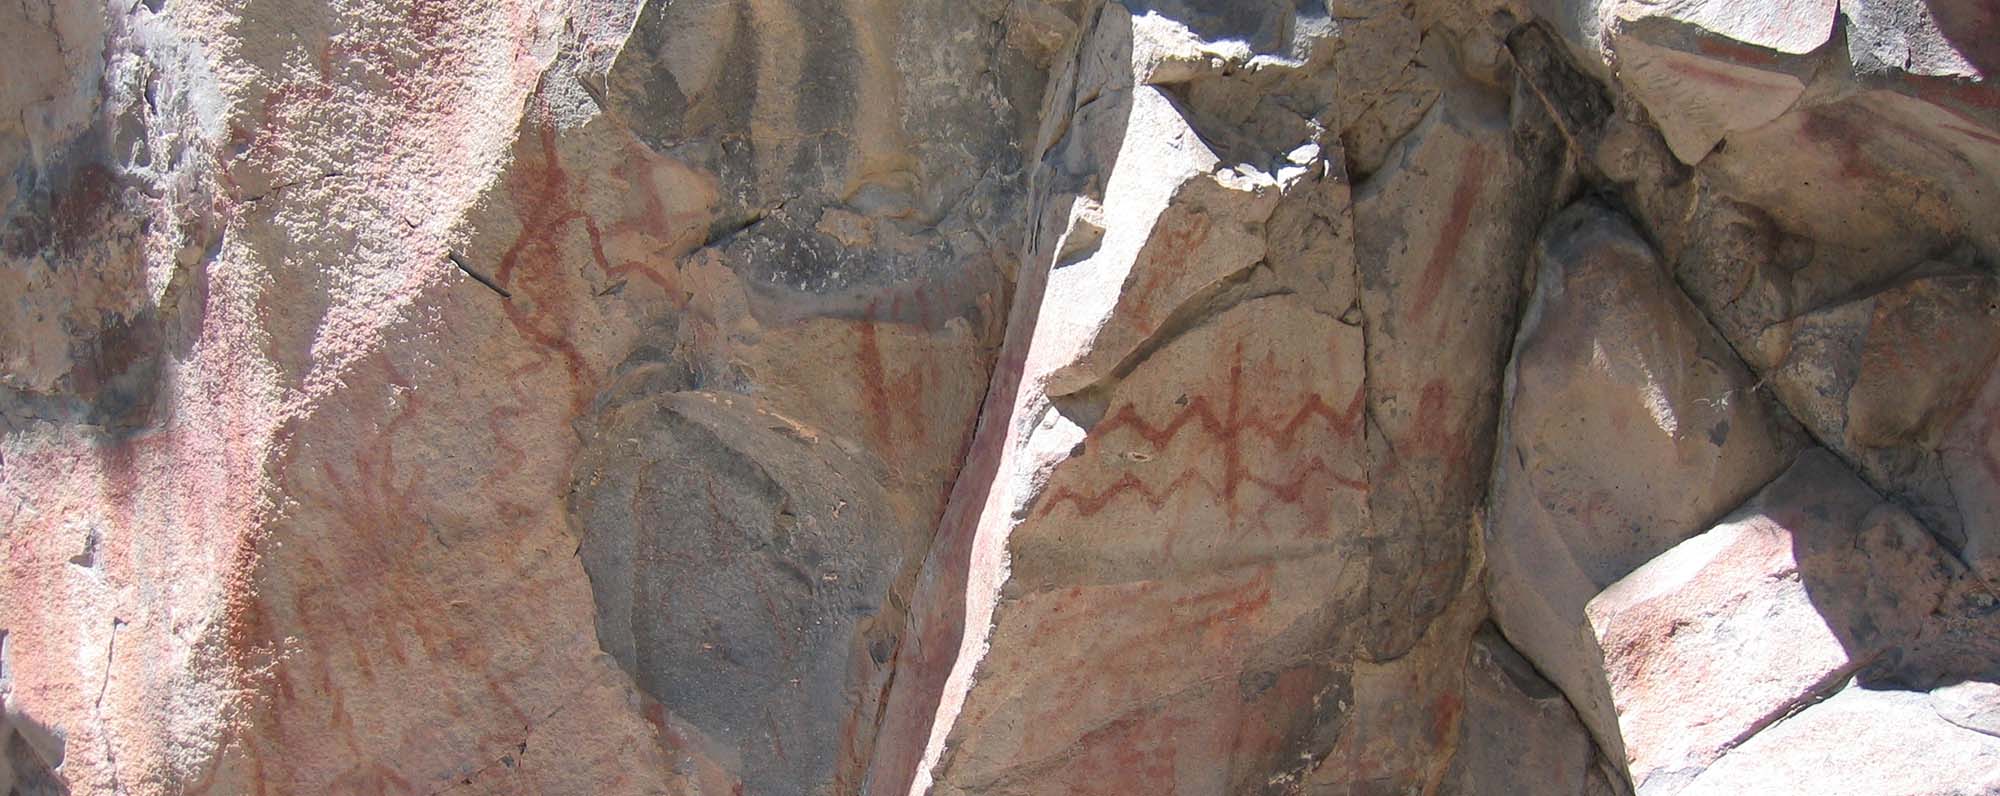 Pueblo petroglyphs in New Mexico